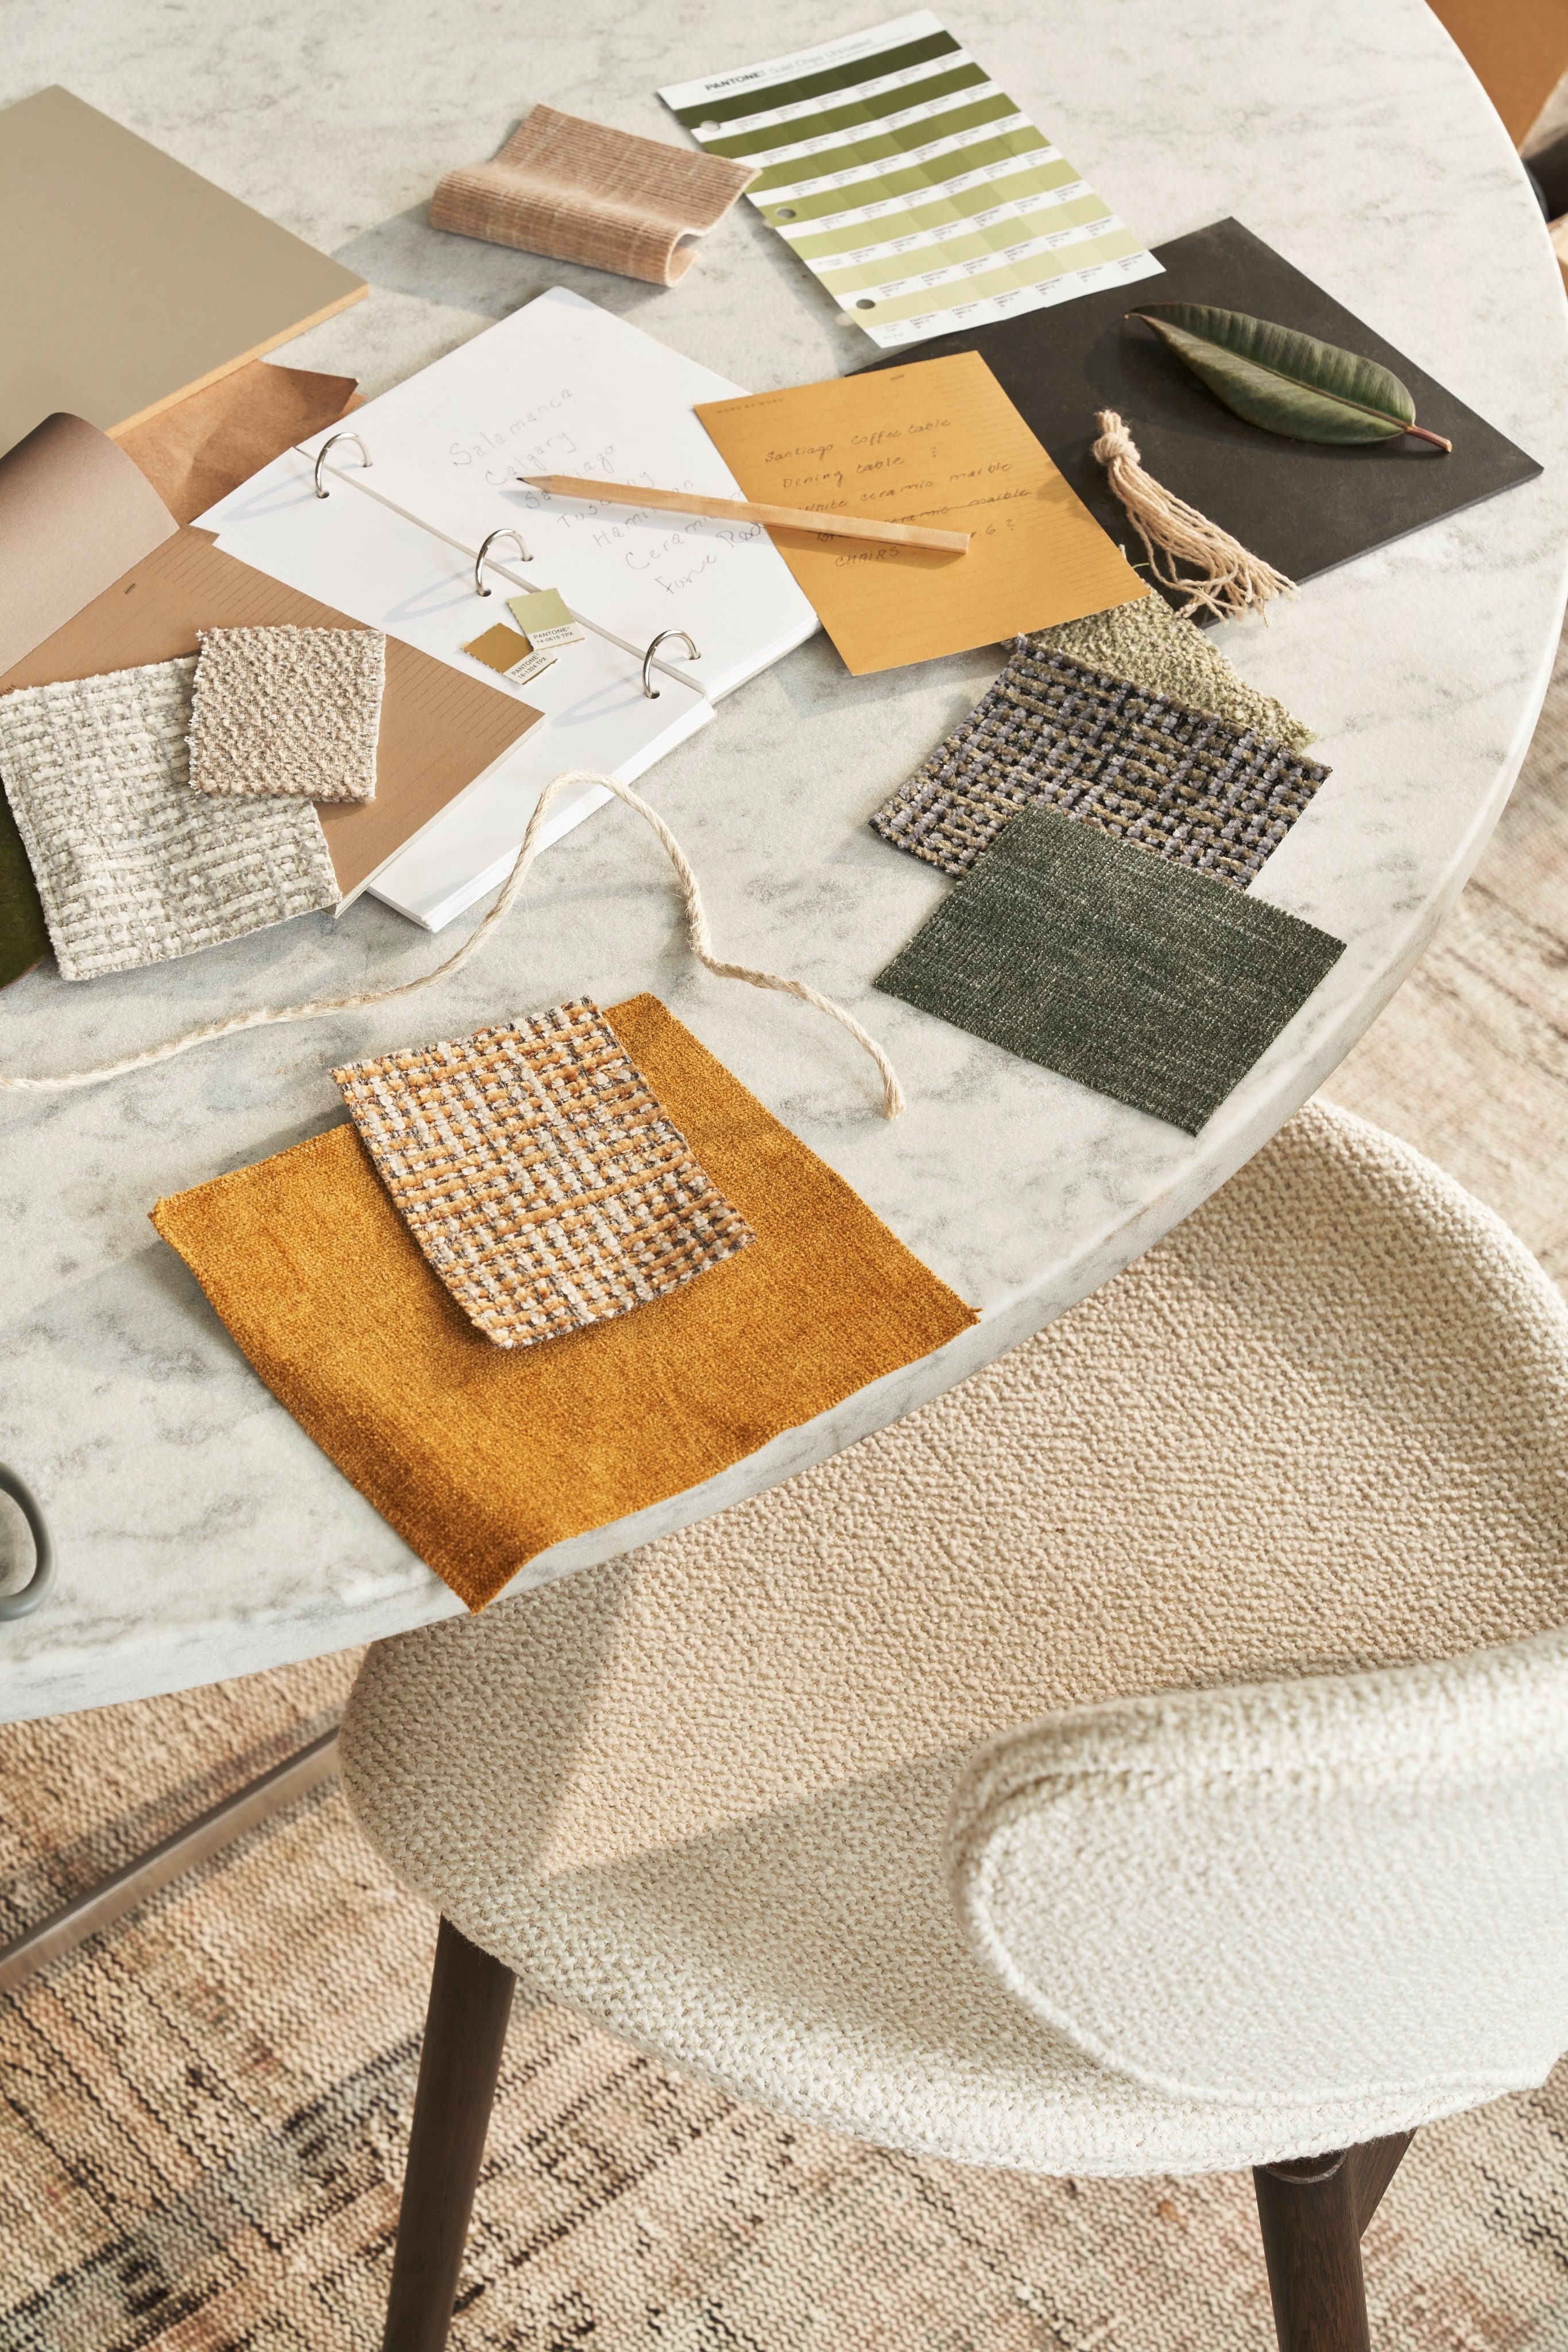 Marmurowy stół z próbkami tkanin, karteczkami i ołówkiem w naturalnych kolorach.